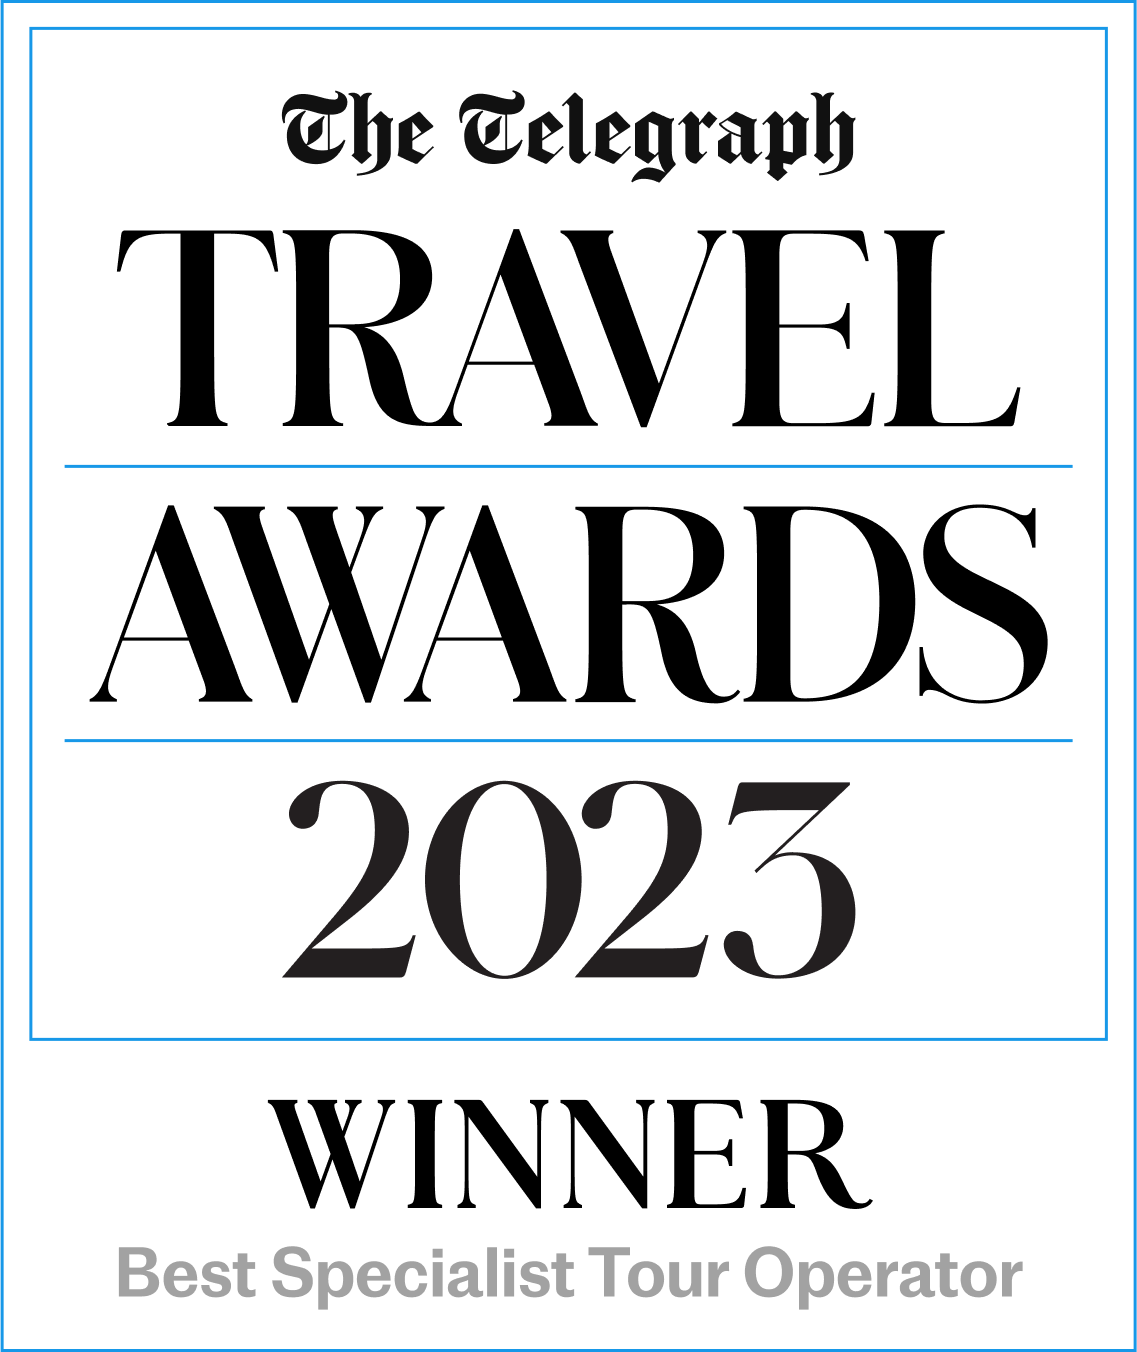 The Telegraph Travel Awards 2017 Winner 